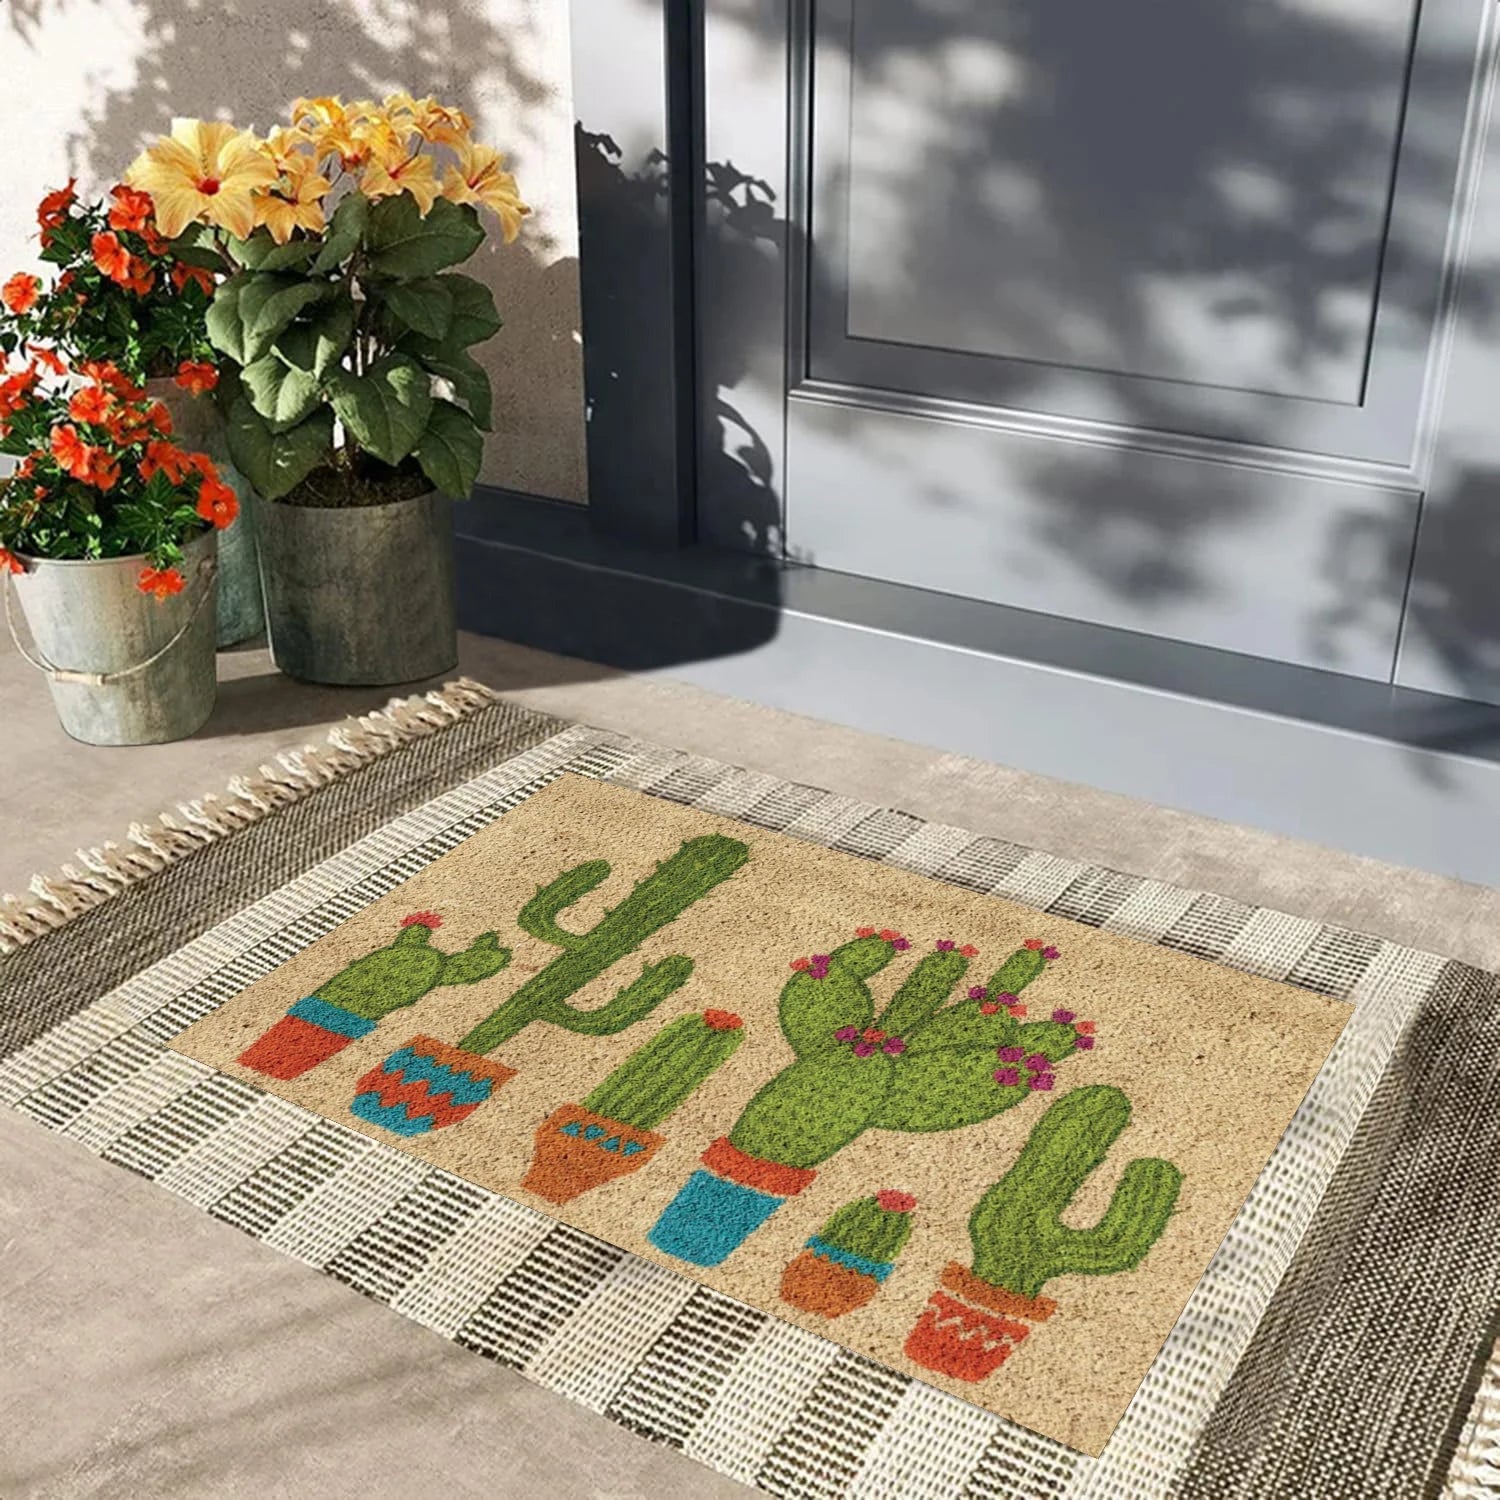 Cactus Door Mats for Floor Rubber Backing Anti Slip Doormats